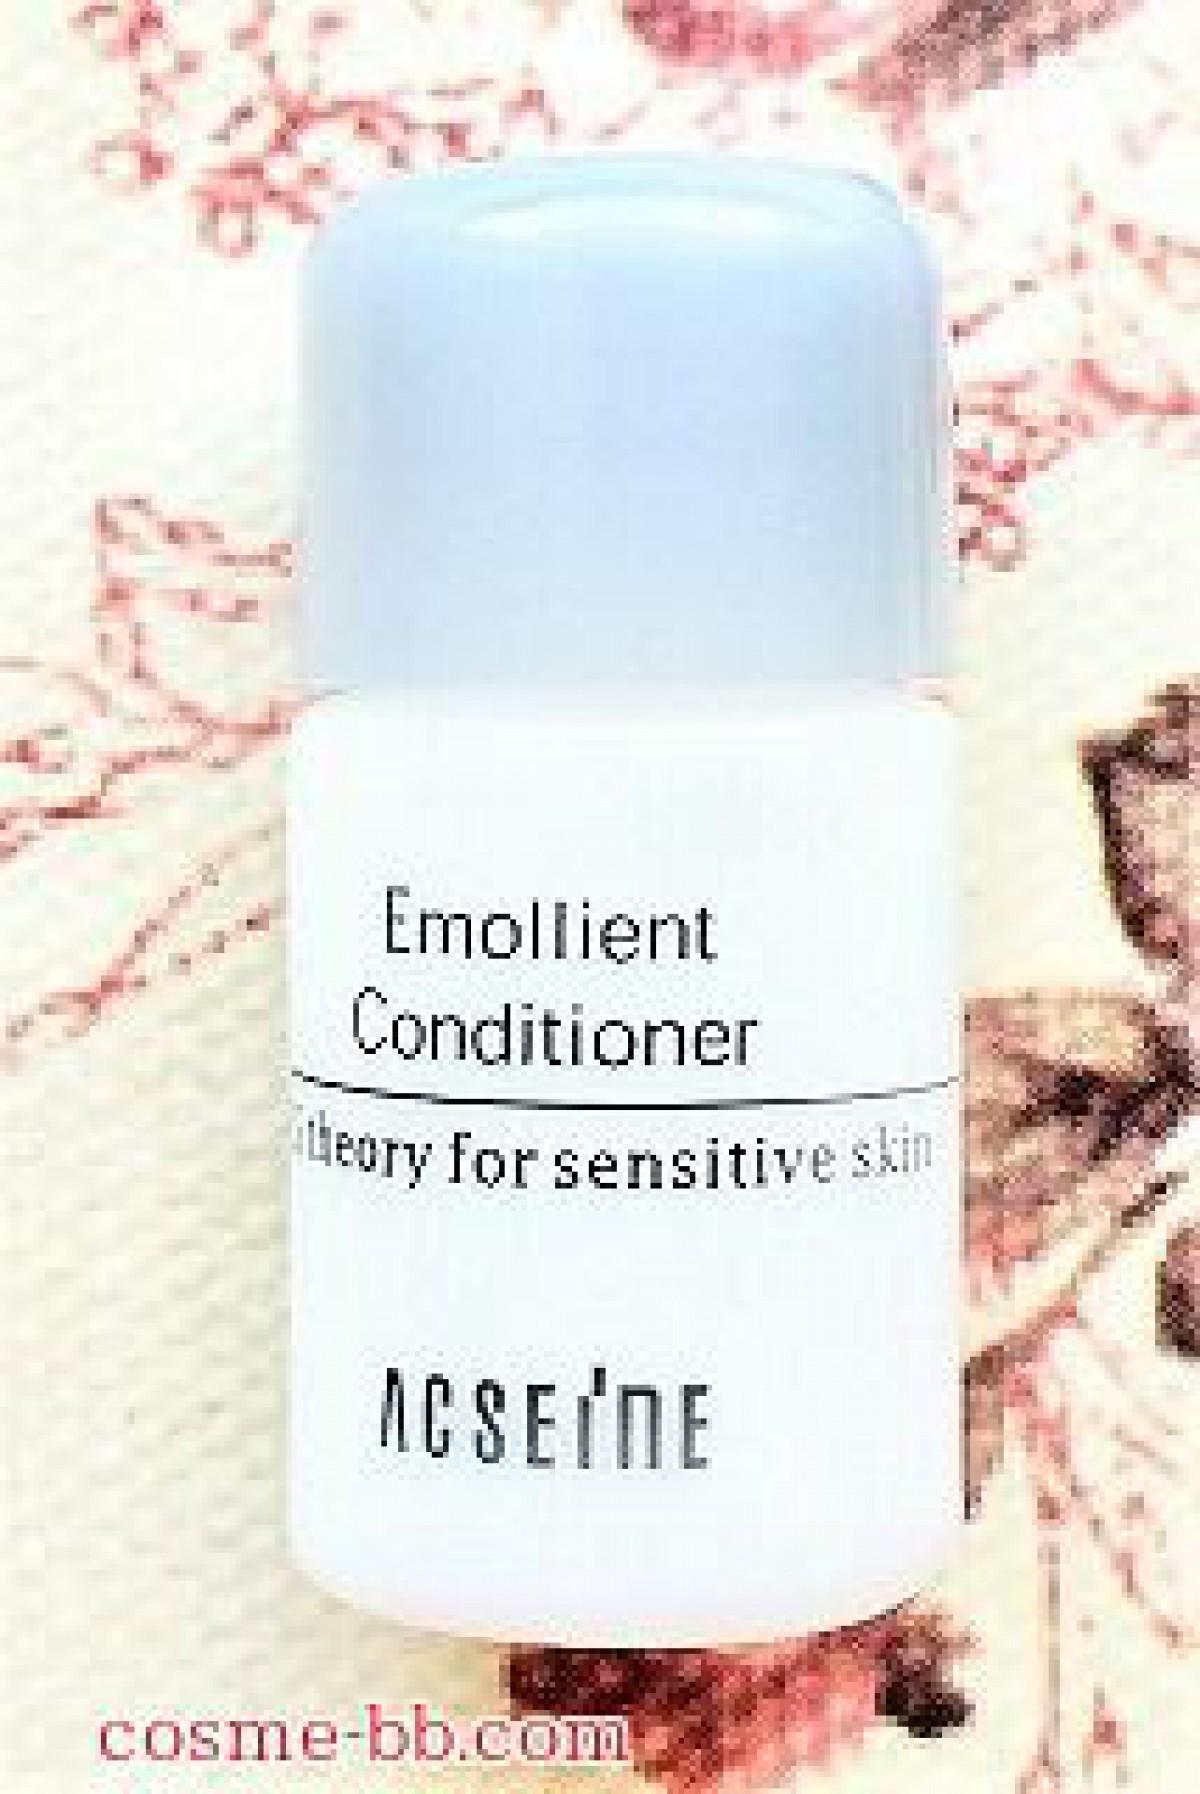 アクセーヌ乳液 エモリエントコンディショナーの成分。敏感肌なので界面活性剤に気をつける